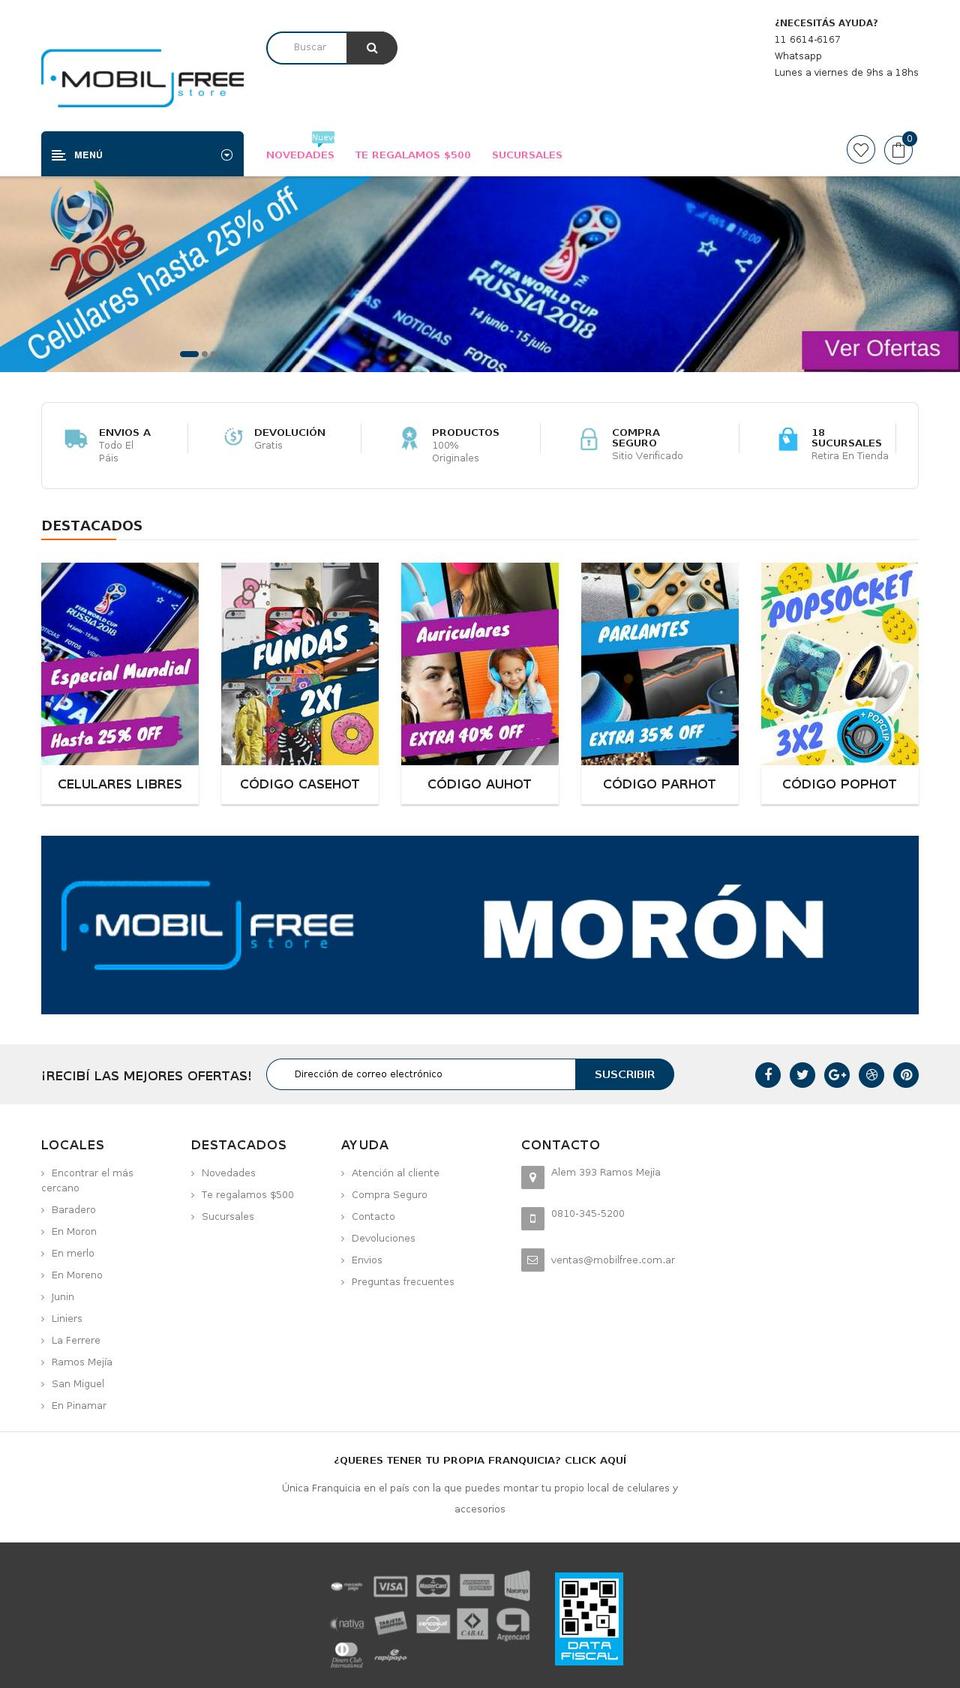 mobilfree.com.ar shopify website screenshot